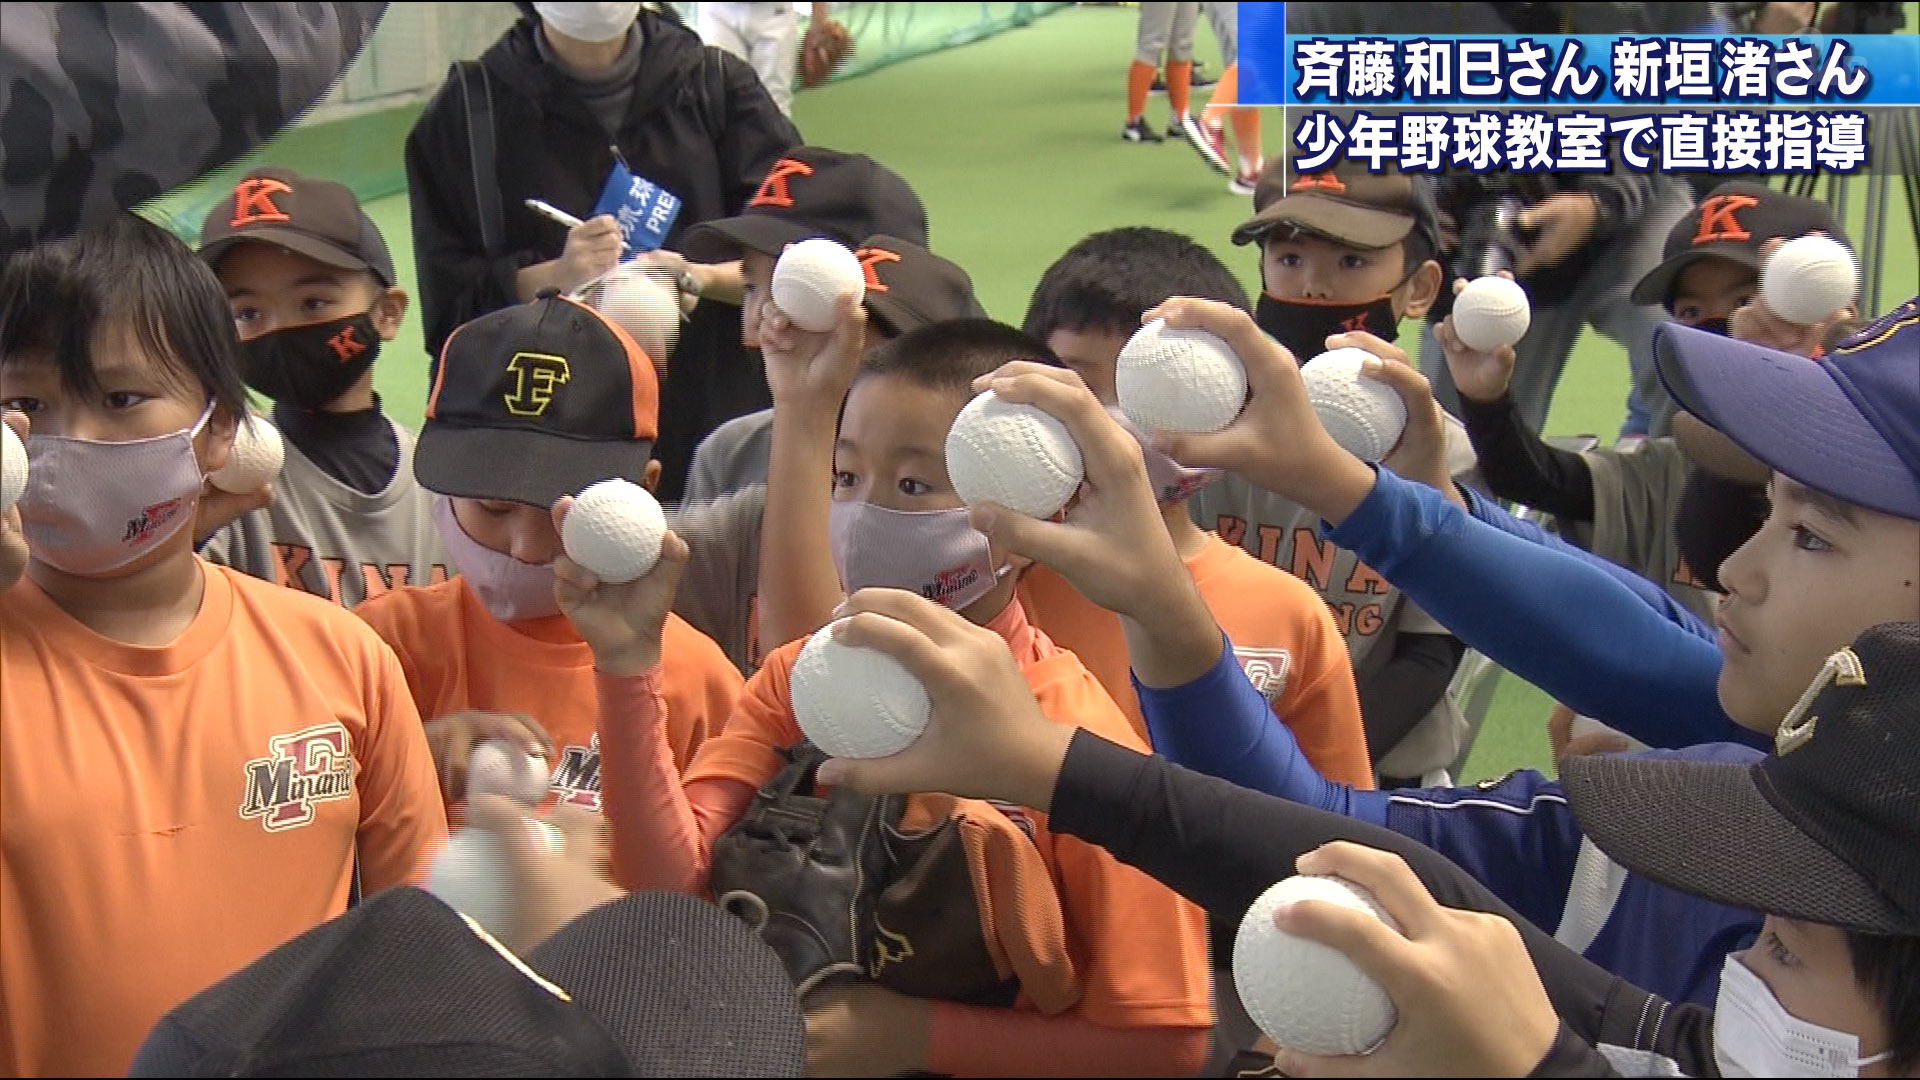 斉藤和巳さんらが嘉手納町で野球教室が開催